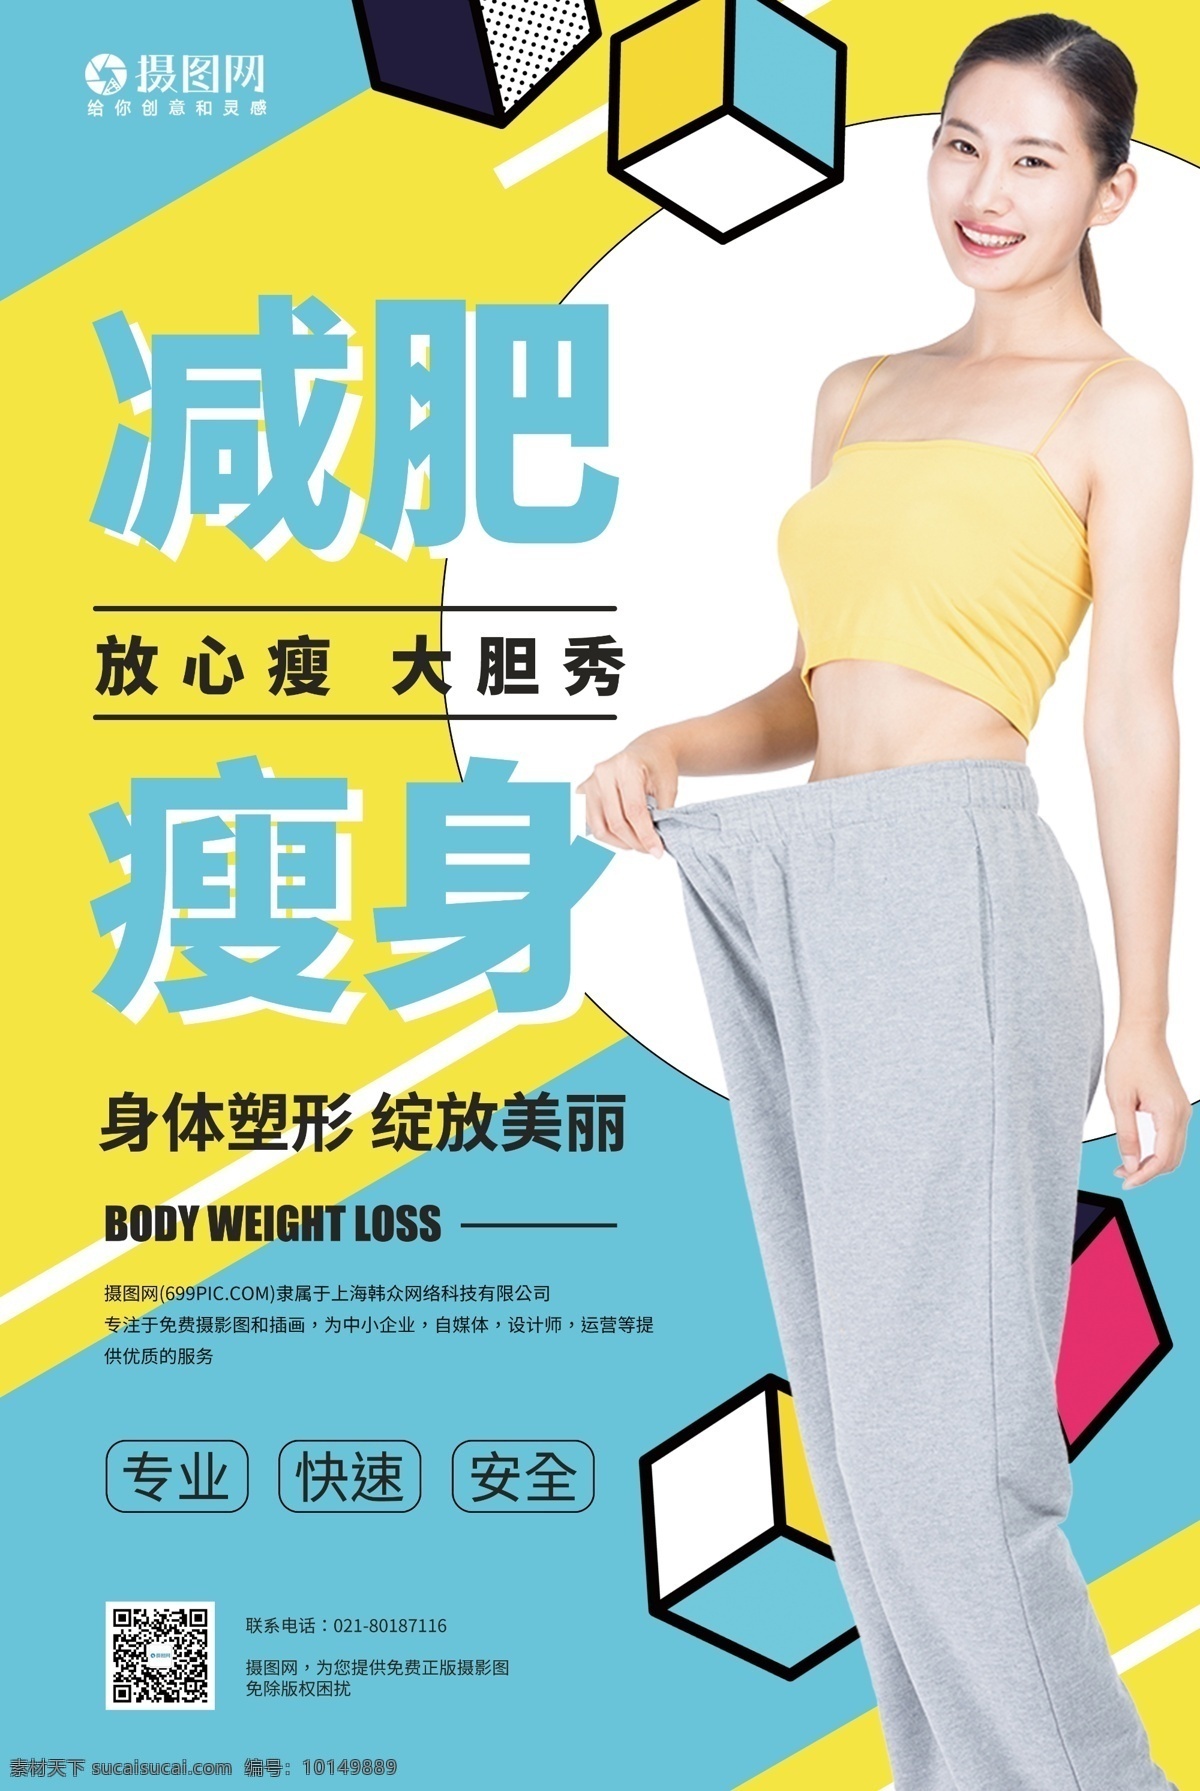 减肥瘦身海报 健身 减肥 瘦身 运动 锻炼 塑形 健身减肥